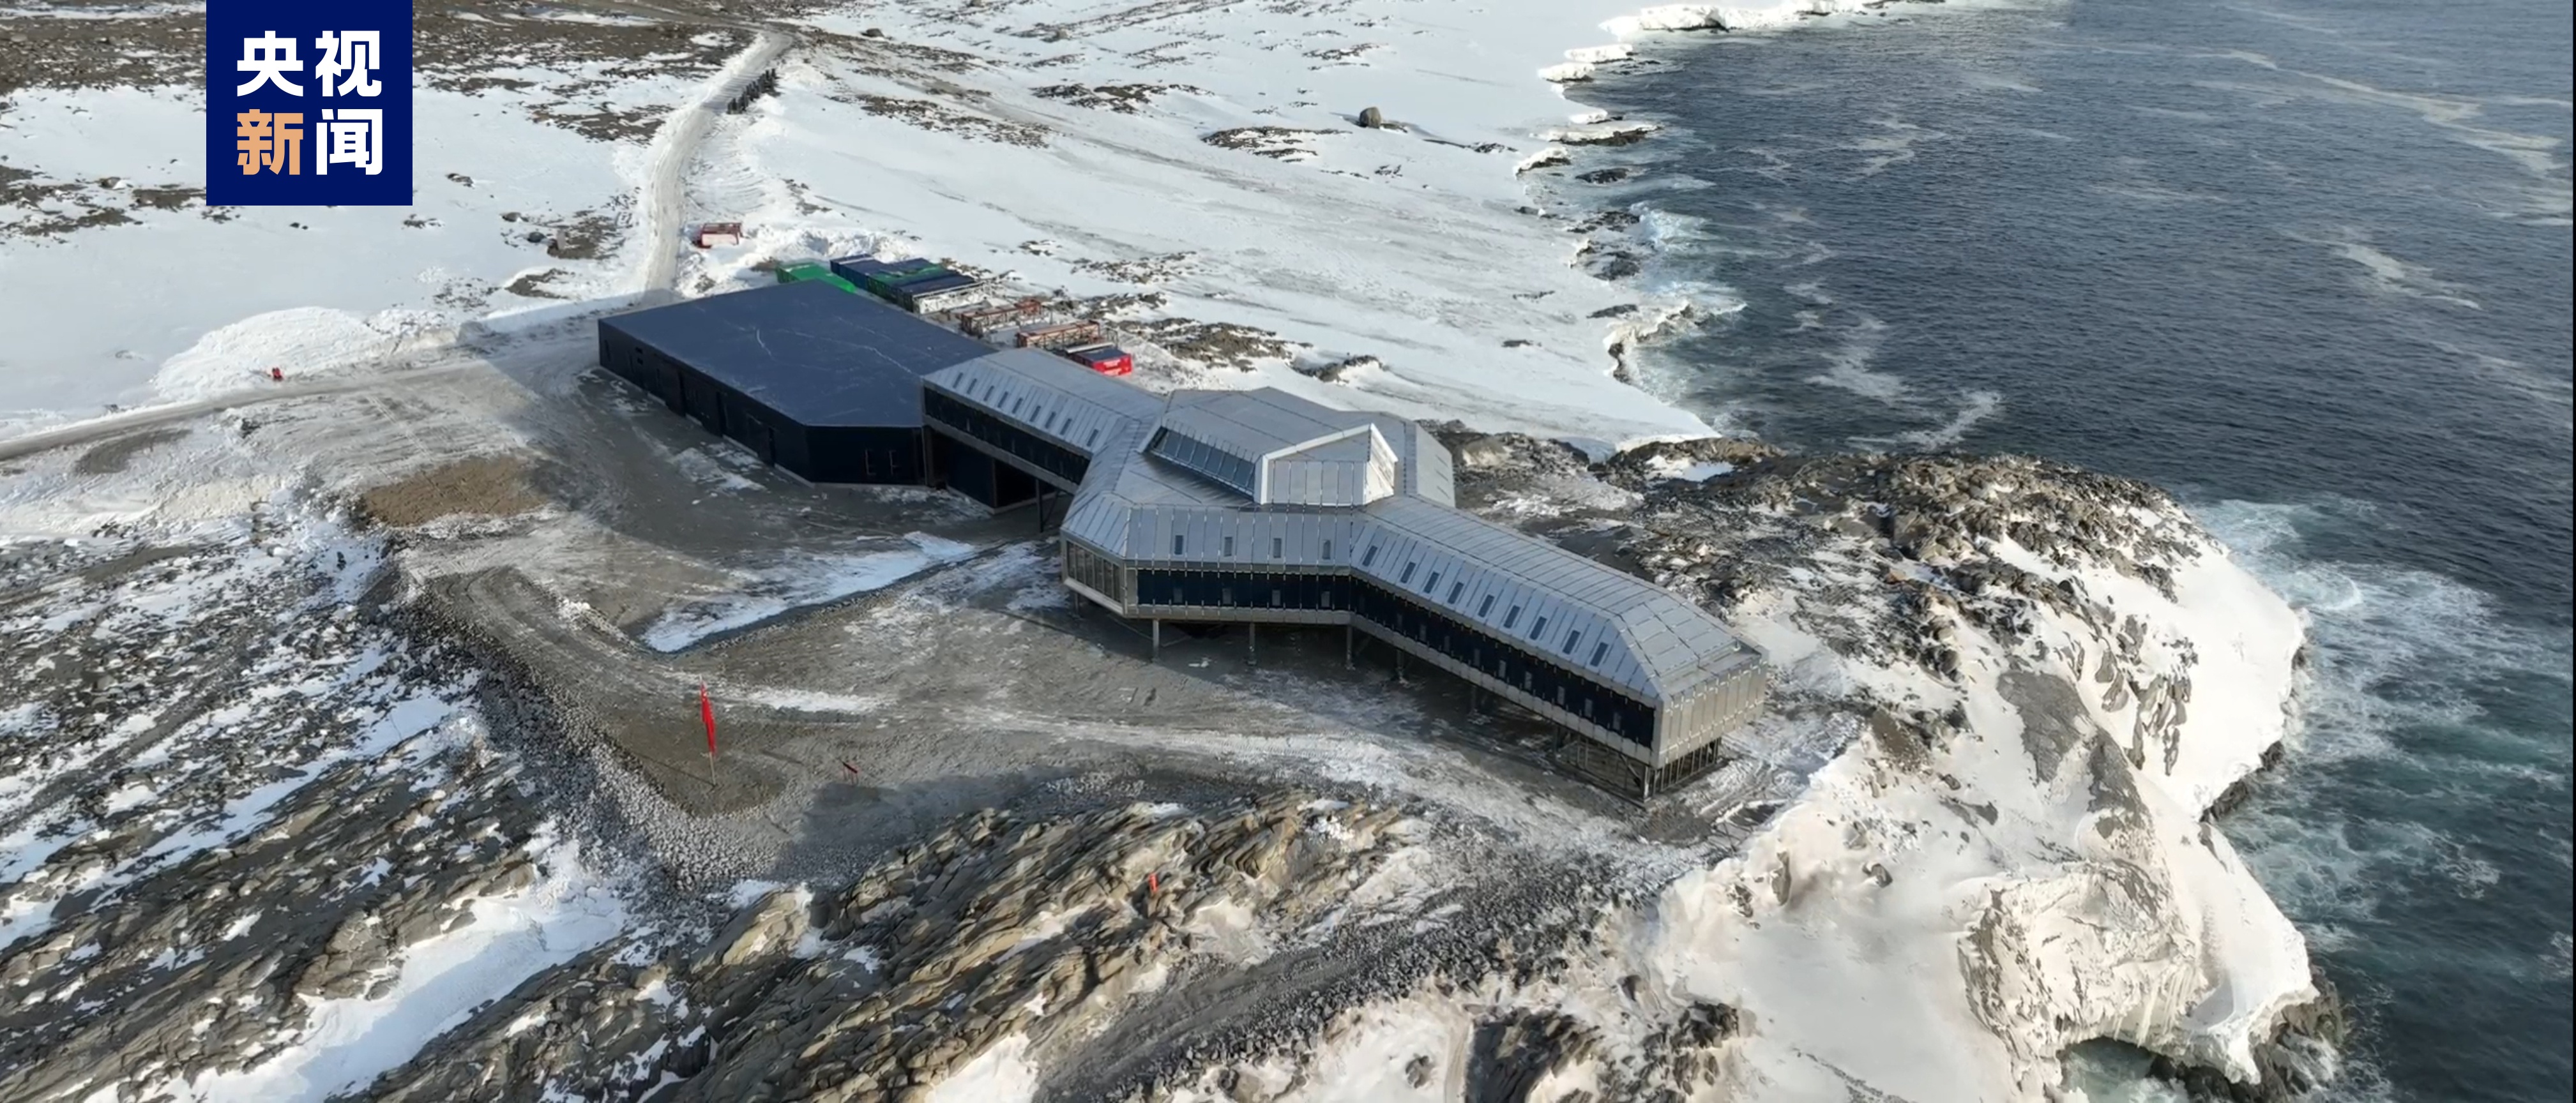 我国第五座南极考察站——秦岭站今天正式开站2